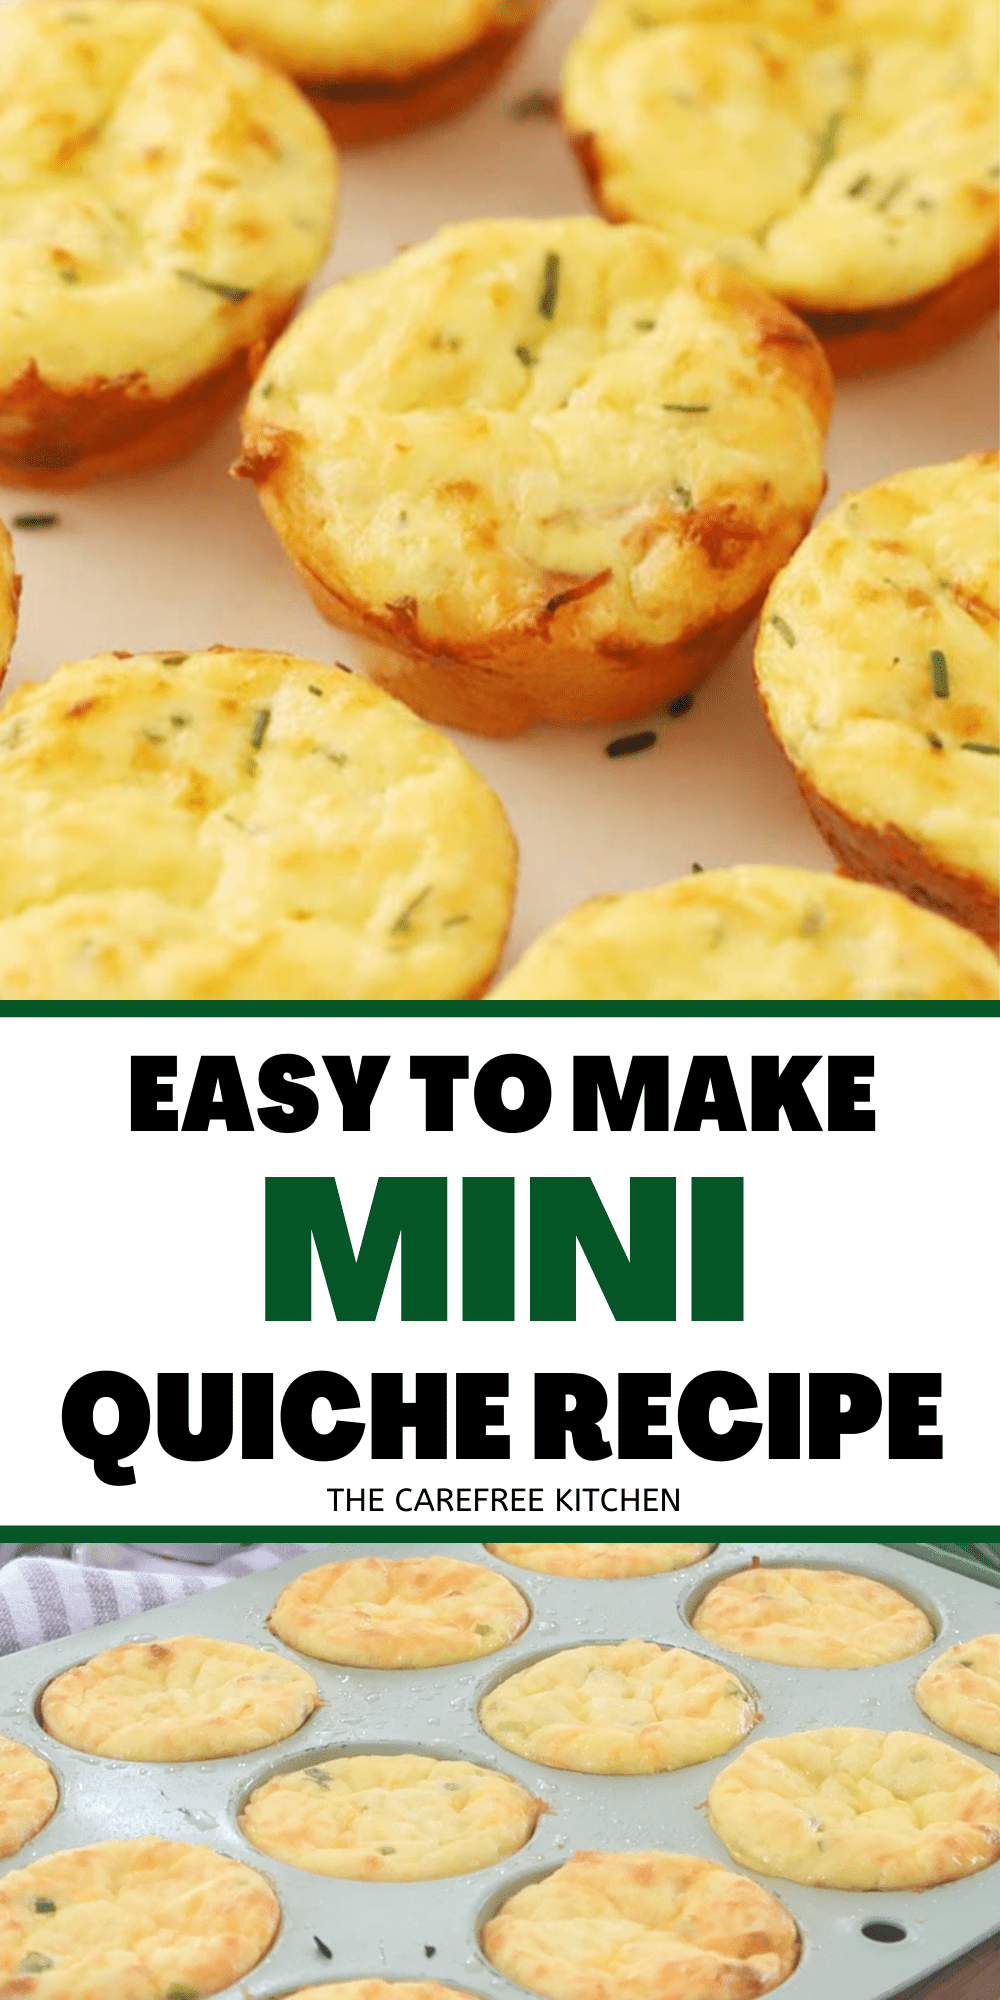 Easy Mini Quiche Recipe - The Carefree Kitchen